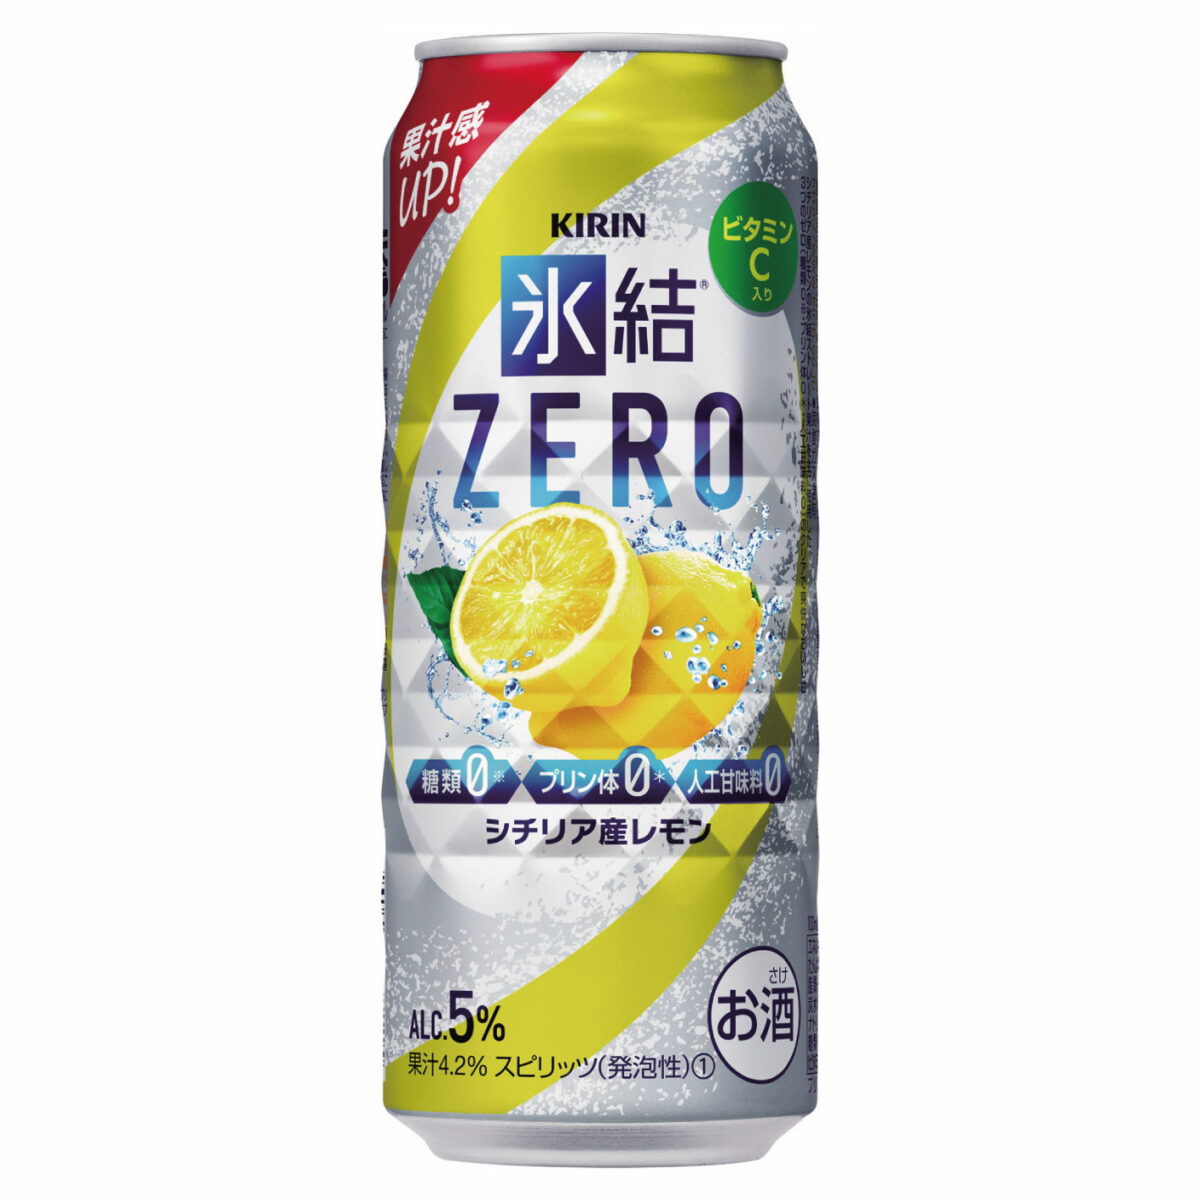 キリン 氷結ZERO シチリア産レモン 500ml 1ケース(24本)の返納品画像イメージ